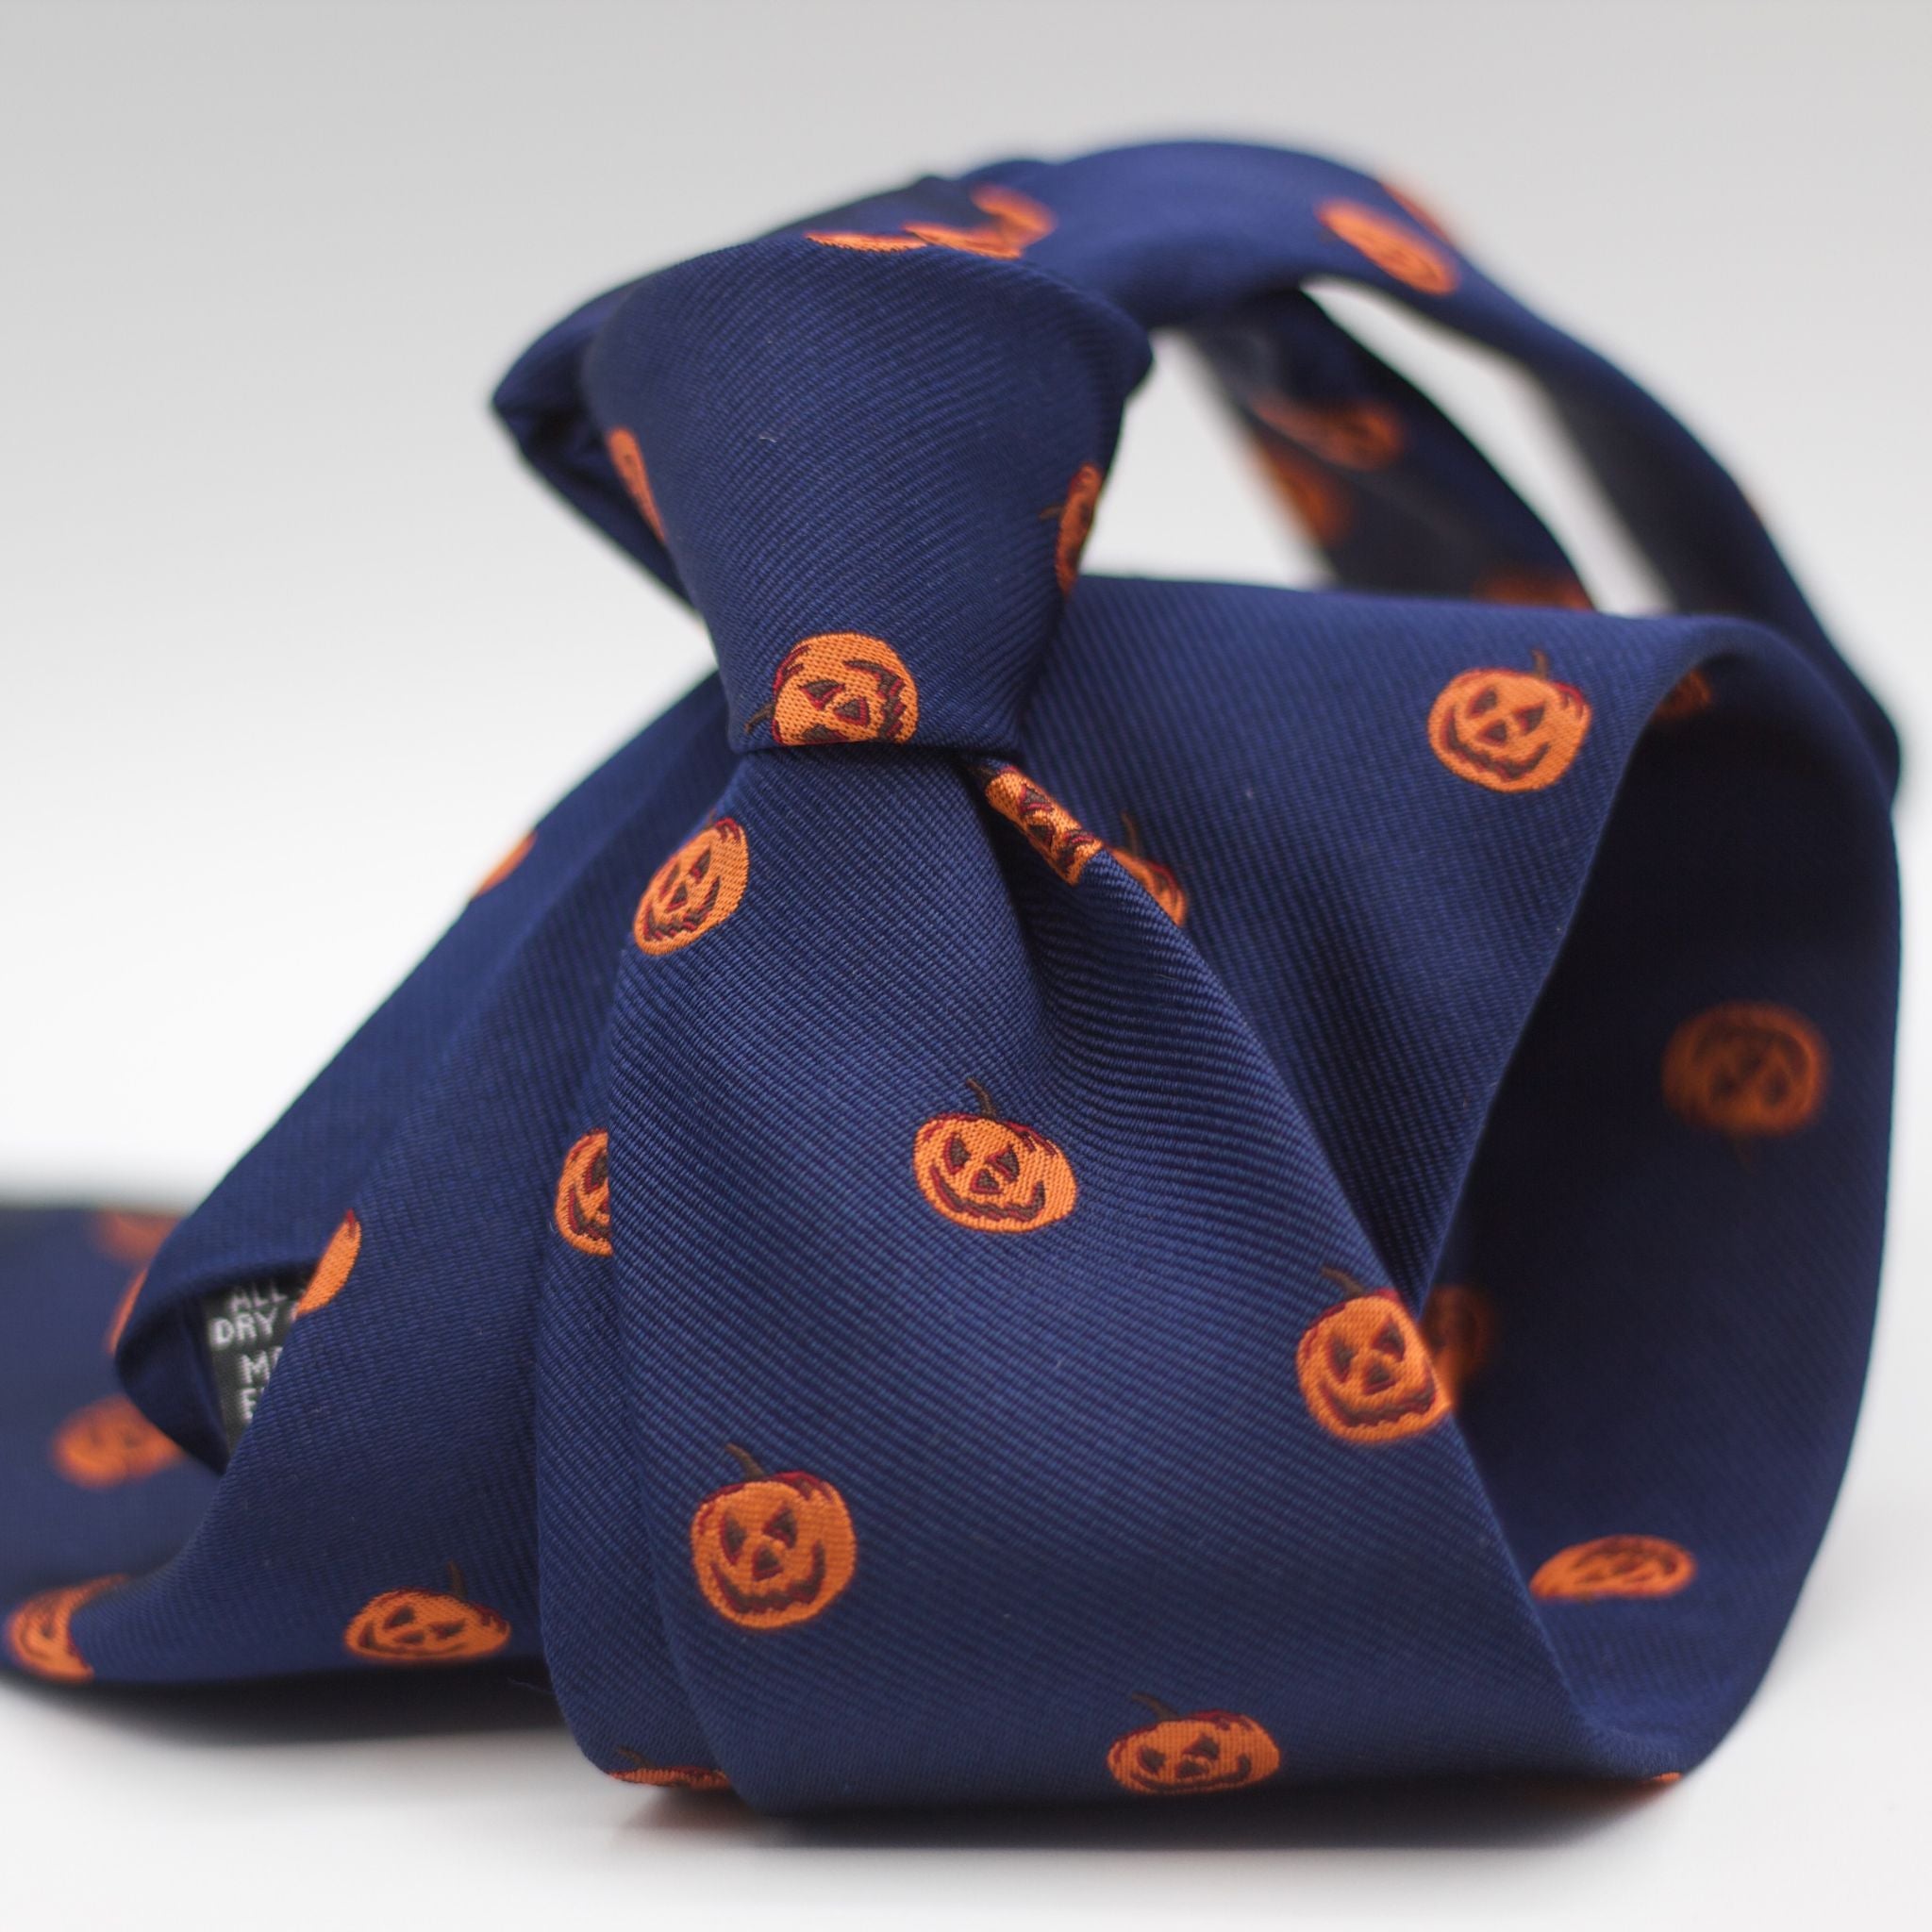 Cruciani & Bella 100% silk Tipped Blue Pumpkin motif Tie  Made in England 8 cm x 150 cm